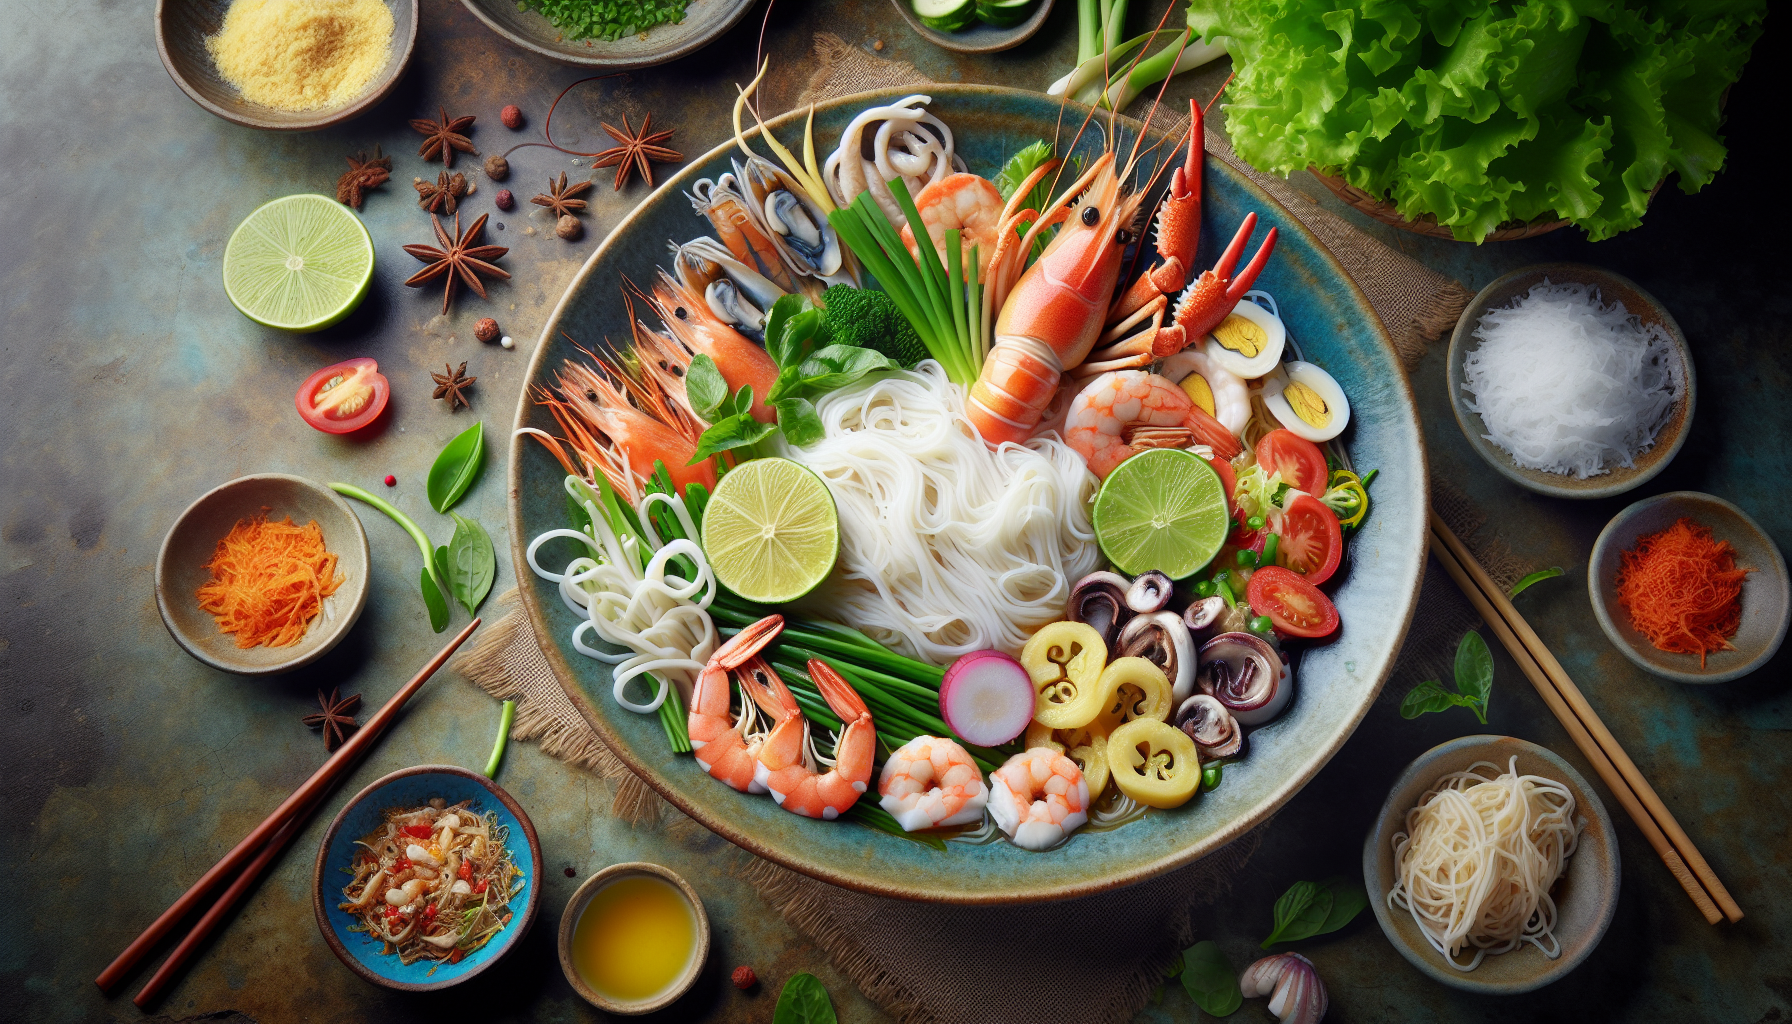 Mì Quảng – một món ăn đặc trưng của Đà Nẵng với sợi mì mềm, tôm, cua, mực và nhiều loại rau sống.